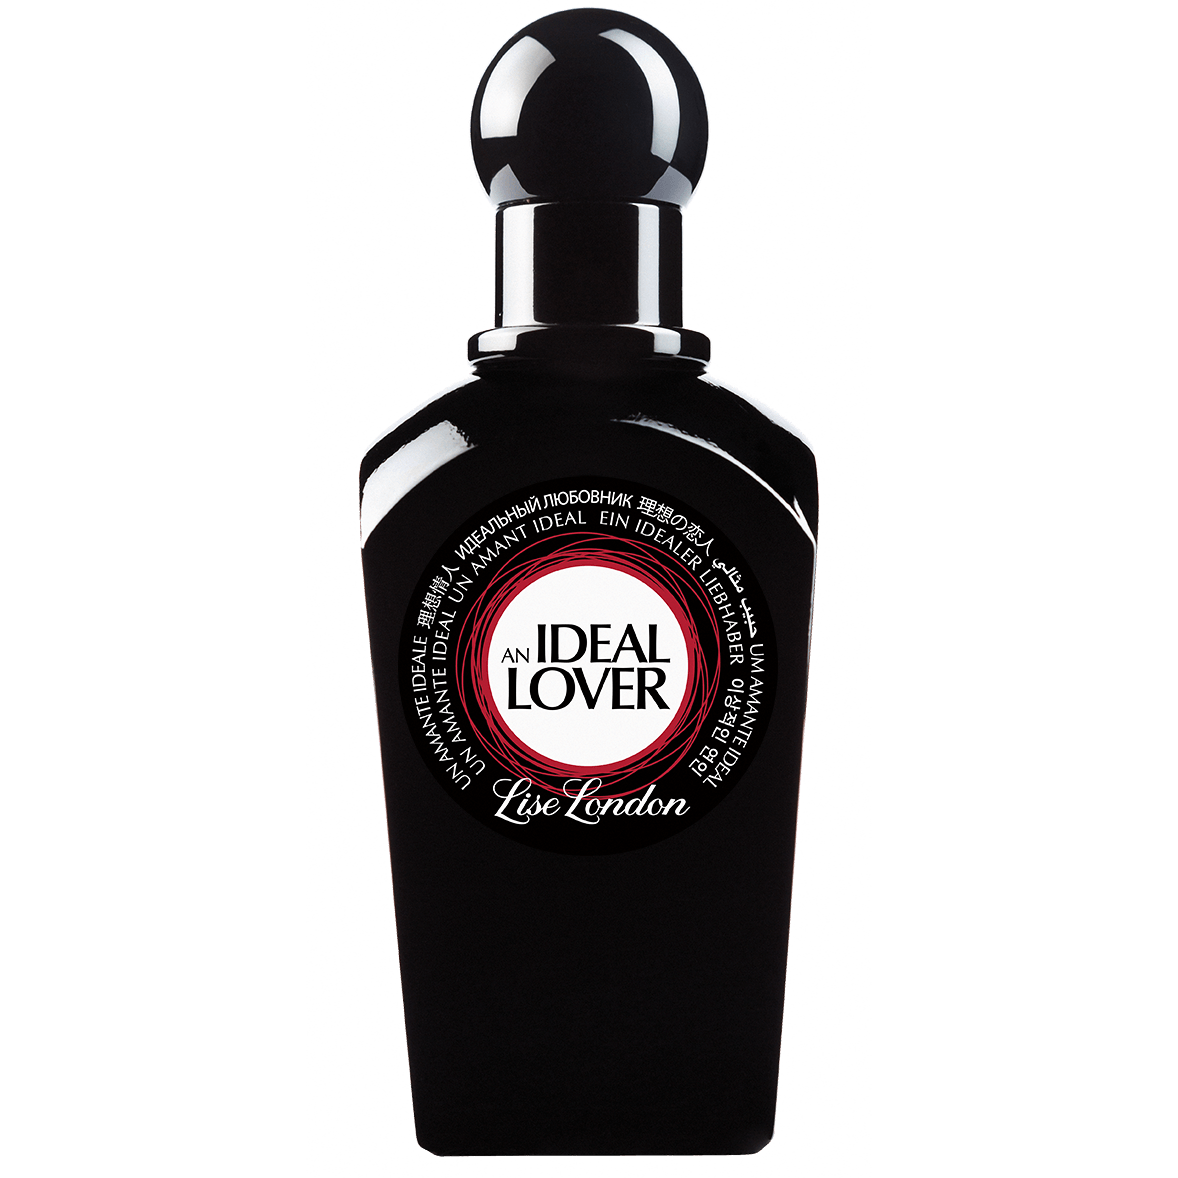 An Ideal Lover - 100ml - Lise London Perfume